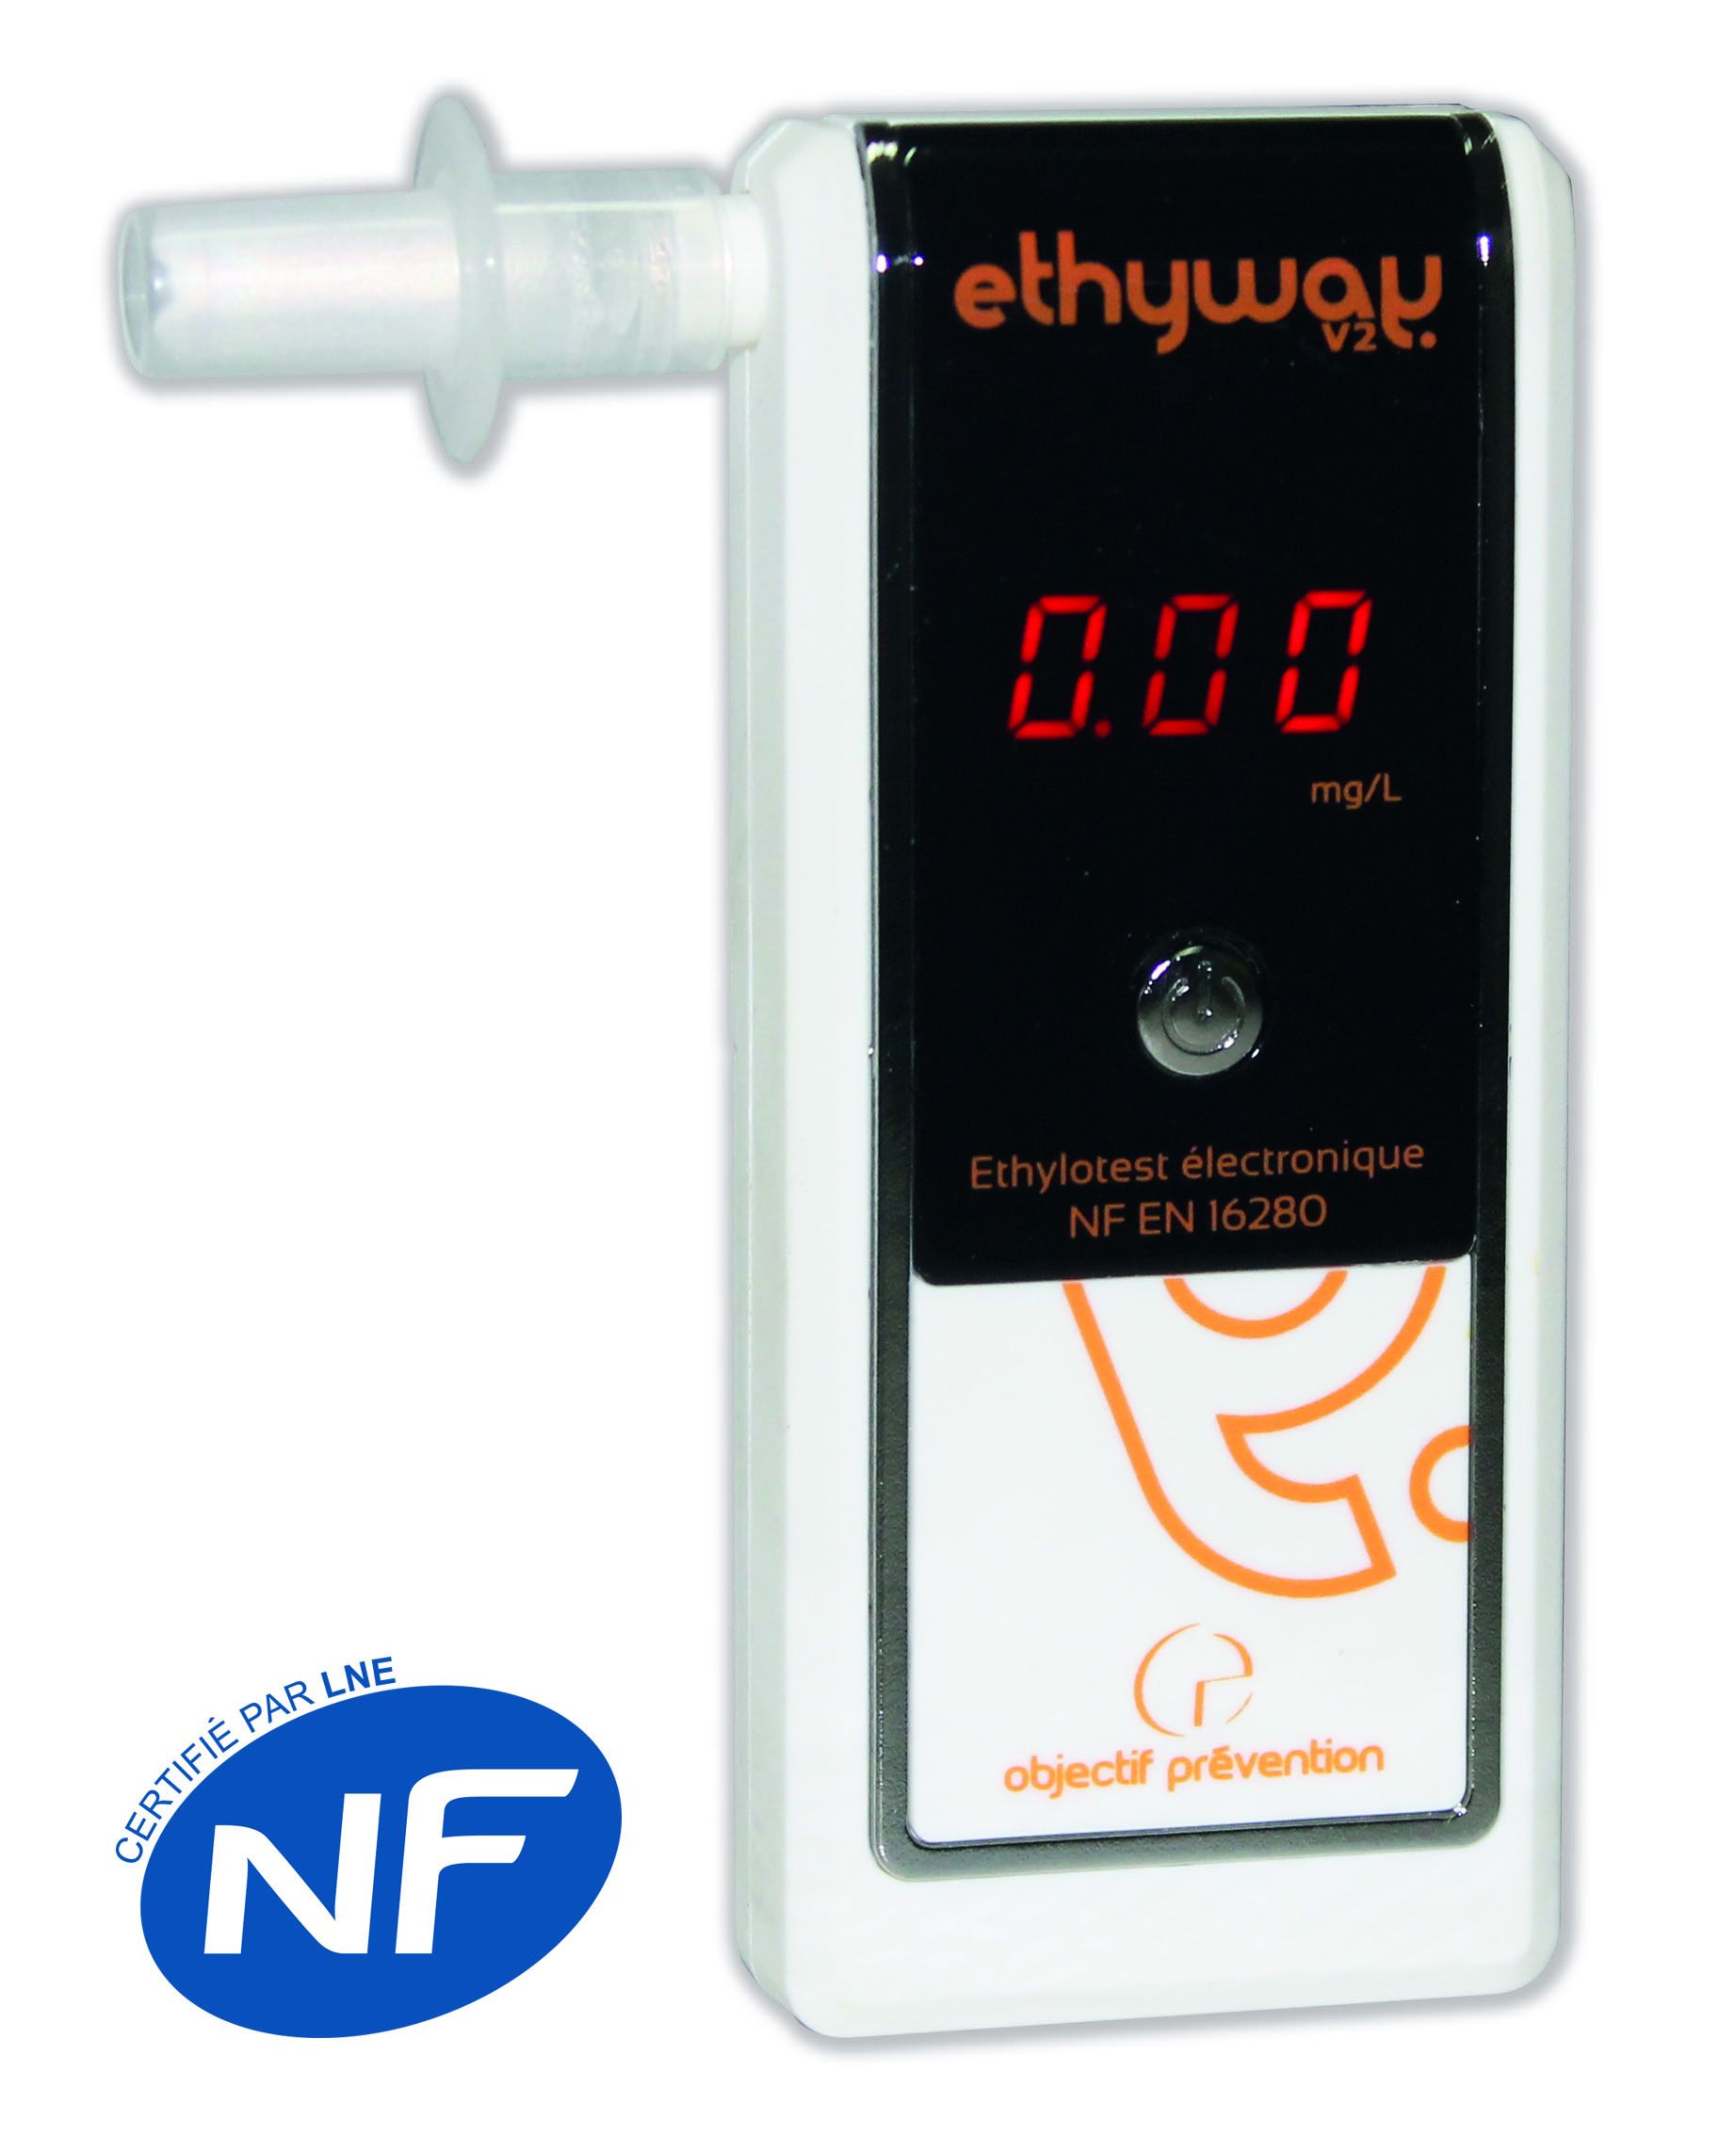 Ethylotest électronique Ethyway V2 Certifié NF à seulement 138,15 €